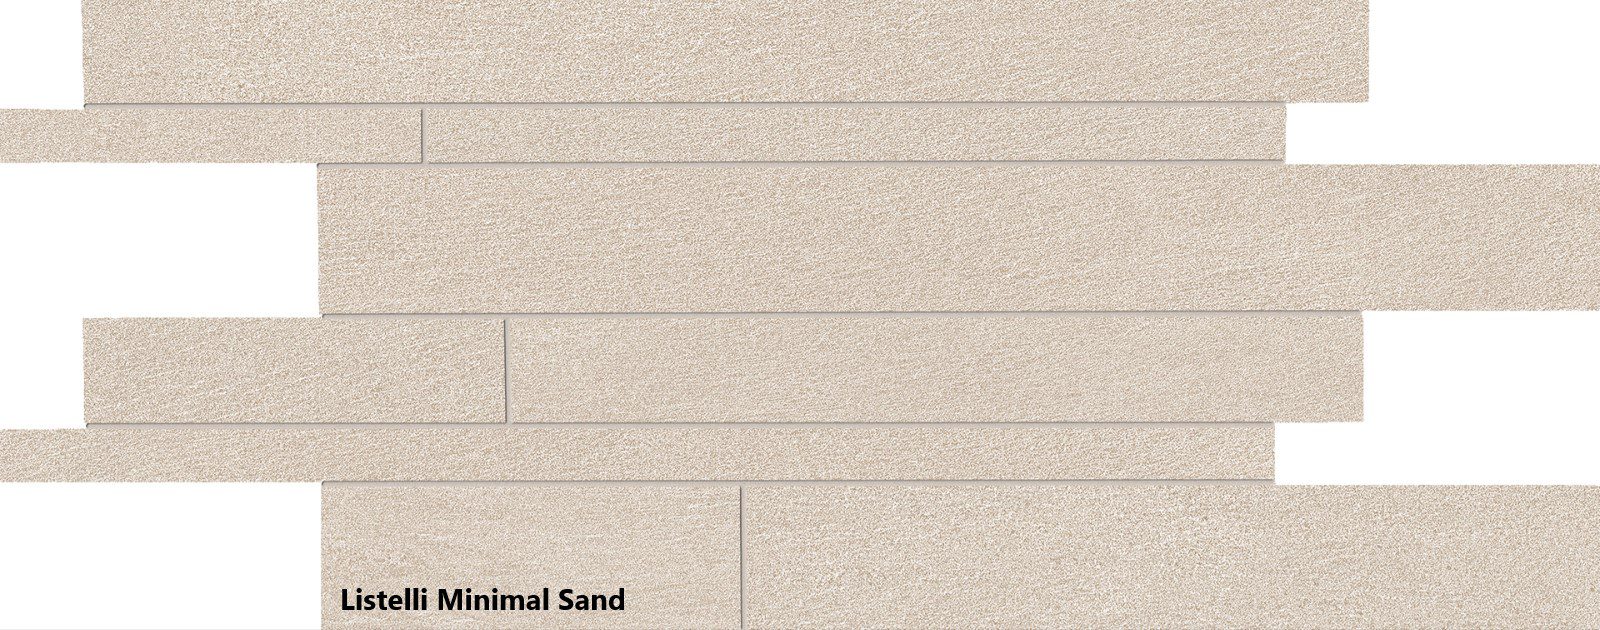 Listelli Minimal Sand